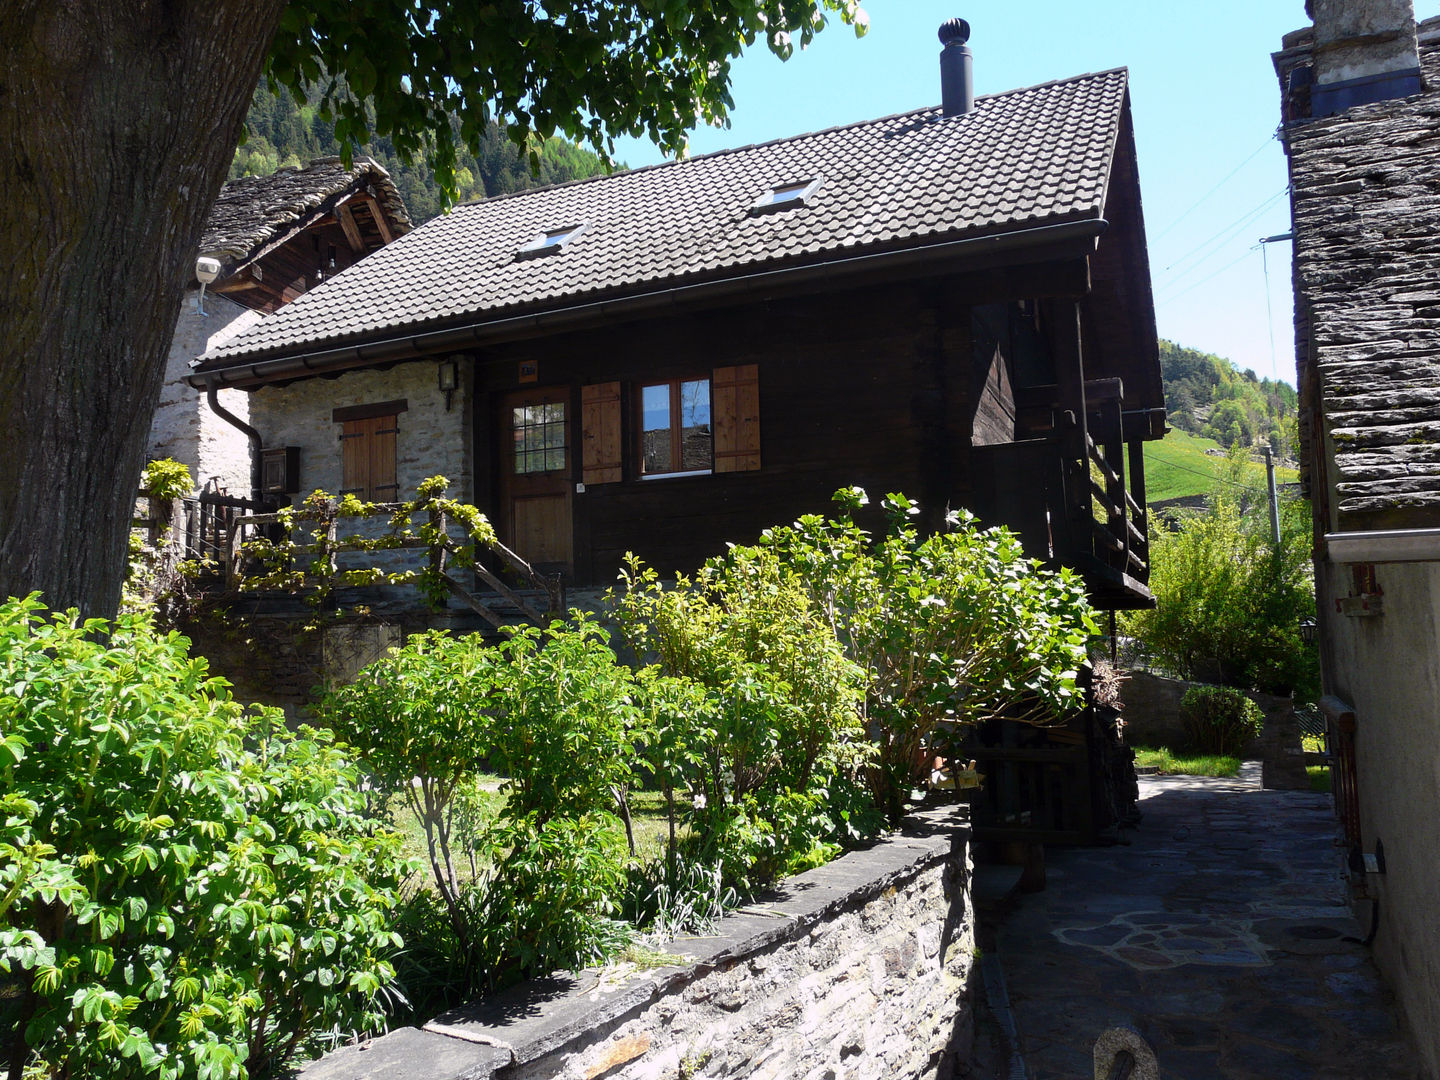 Casa vacanze in Svizzera, Interni d' Architettura Interni d' Architettura Rustic style house